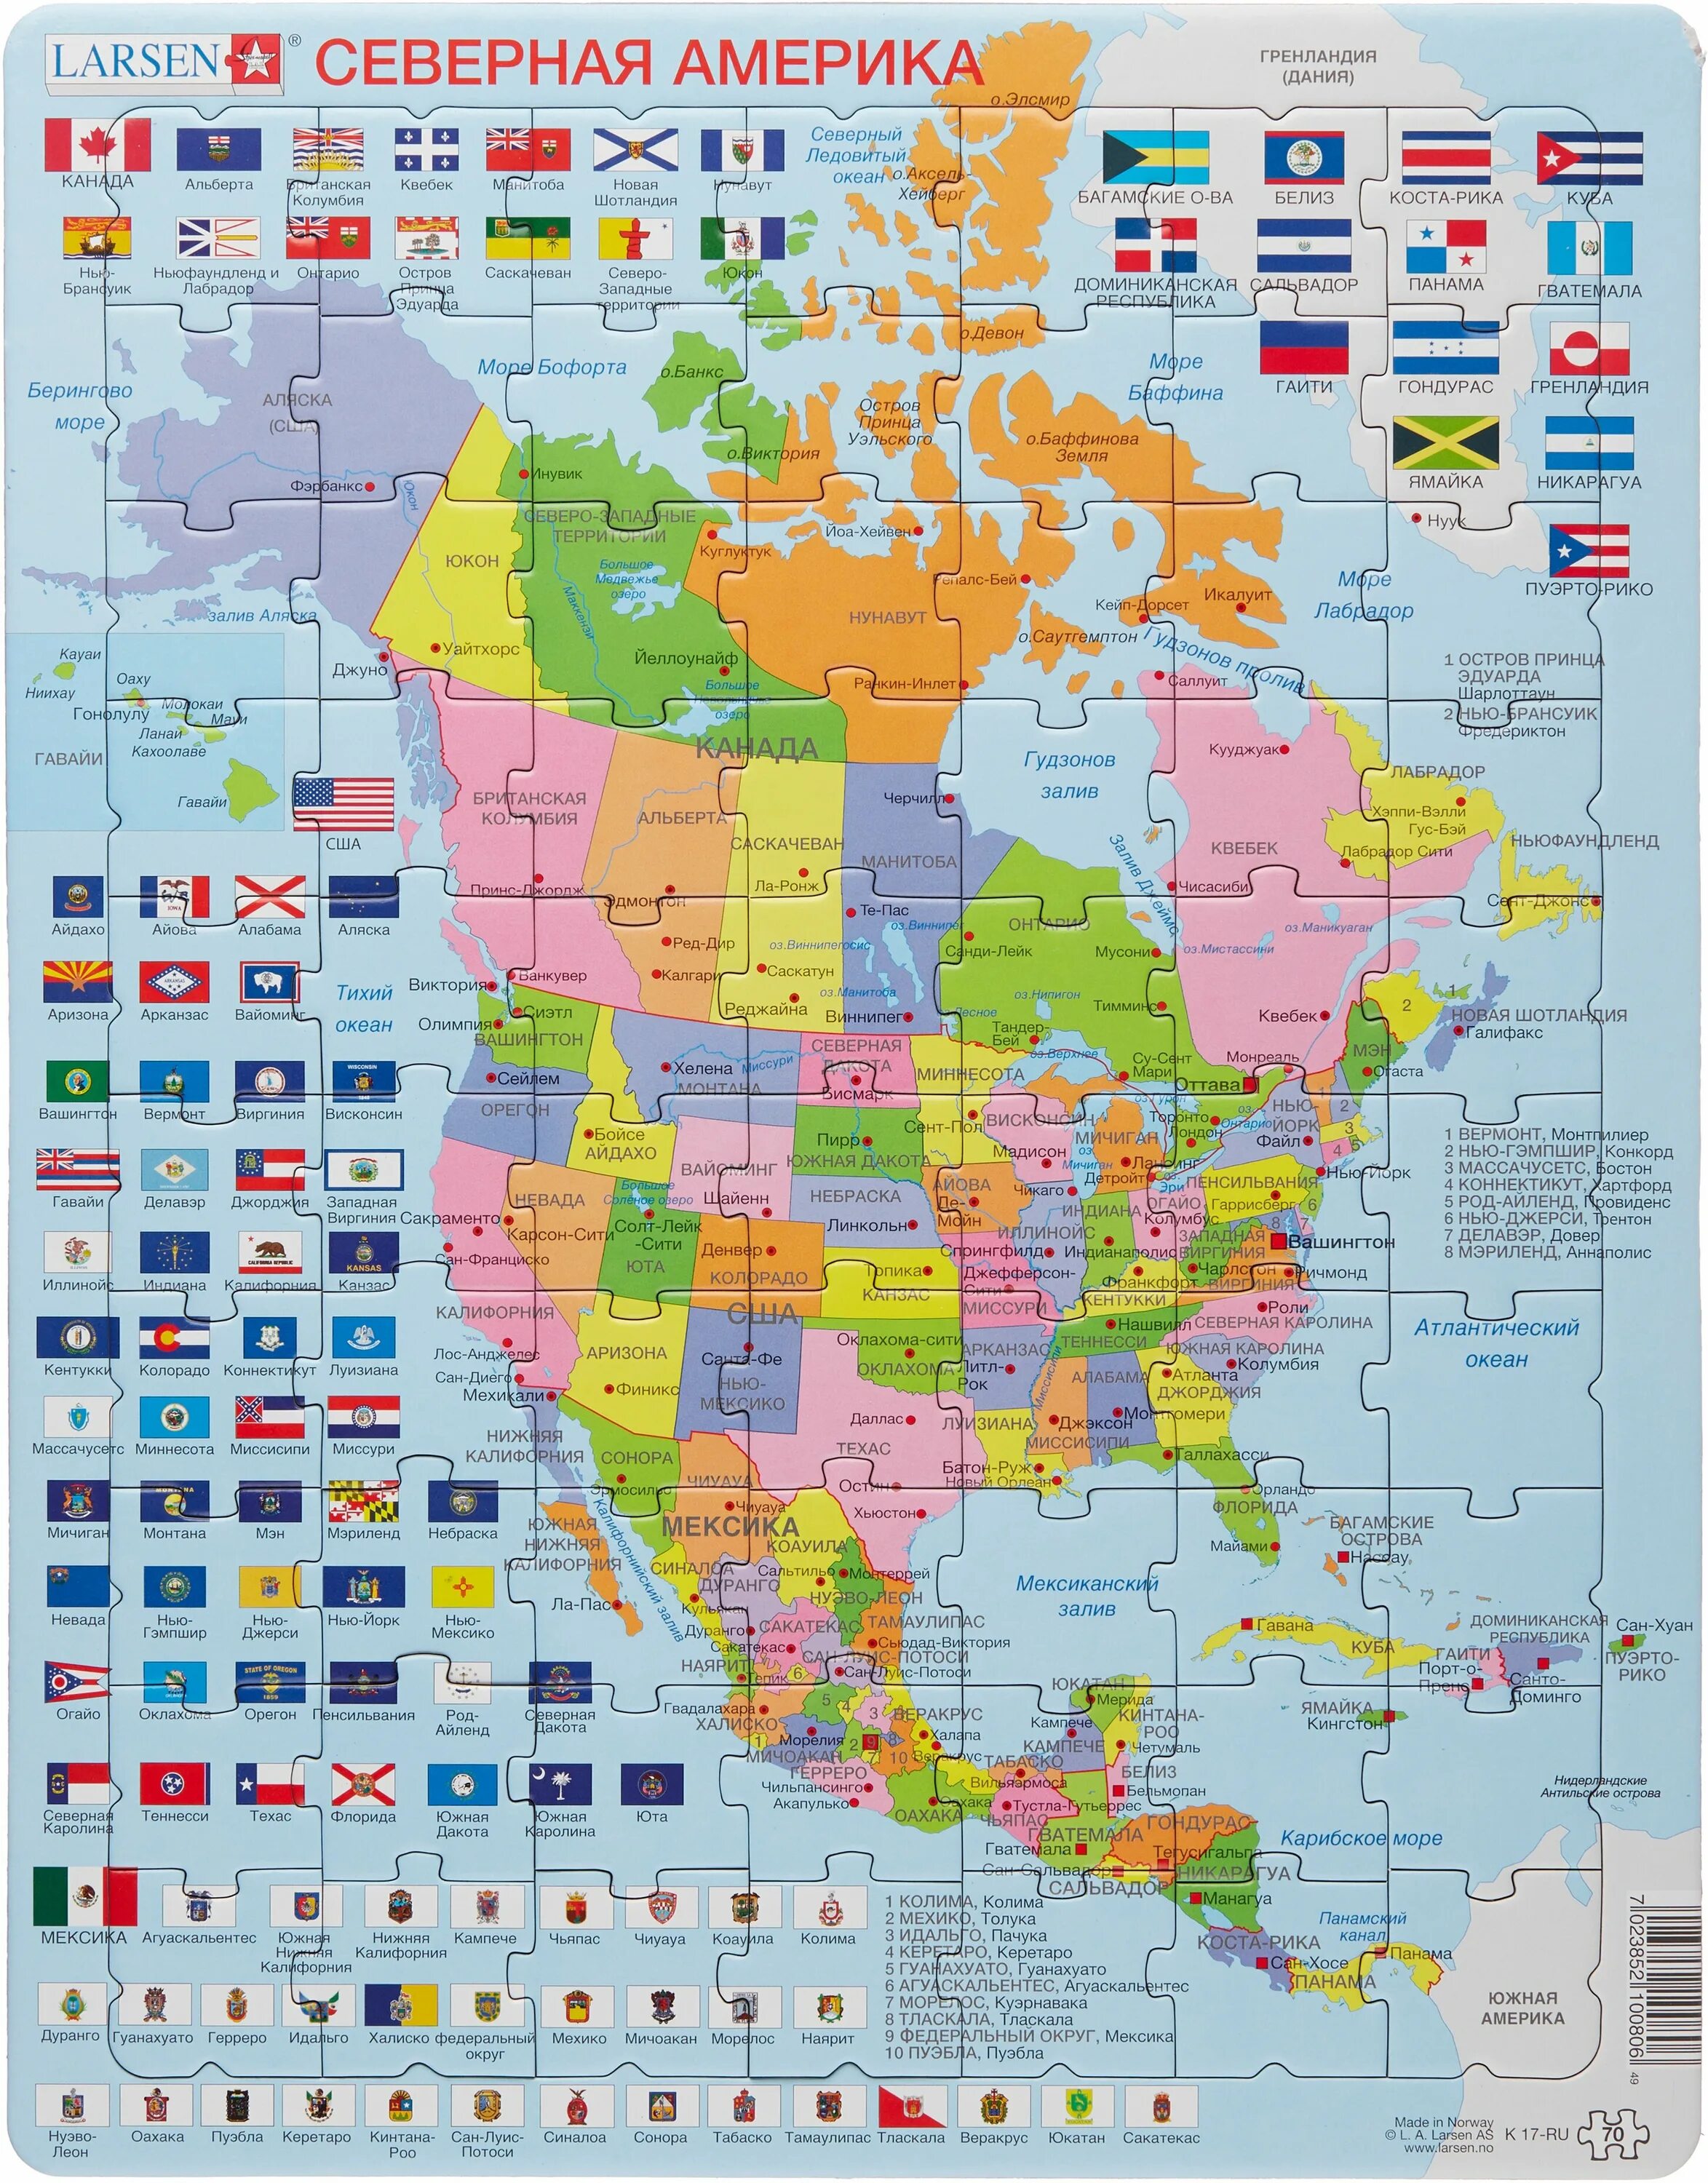 Северная Америка политическая карта на русском. Larsen пазл Северная Америка. Северная и Южная Америка политическая карта на русском. Карта Северной Америки Америки со странами.